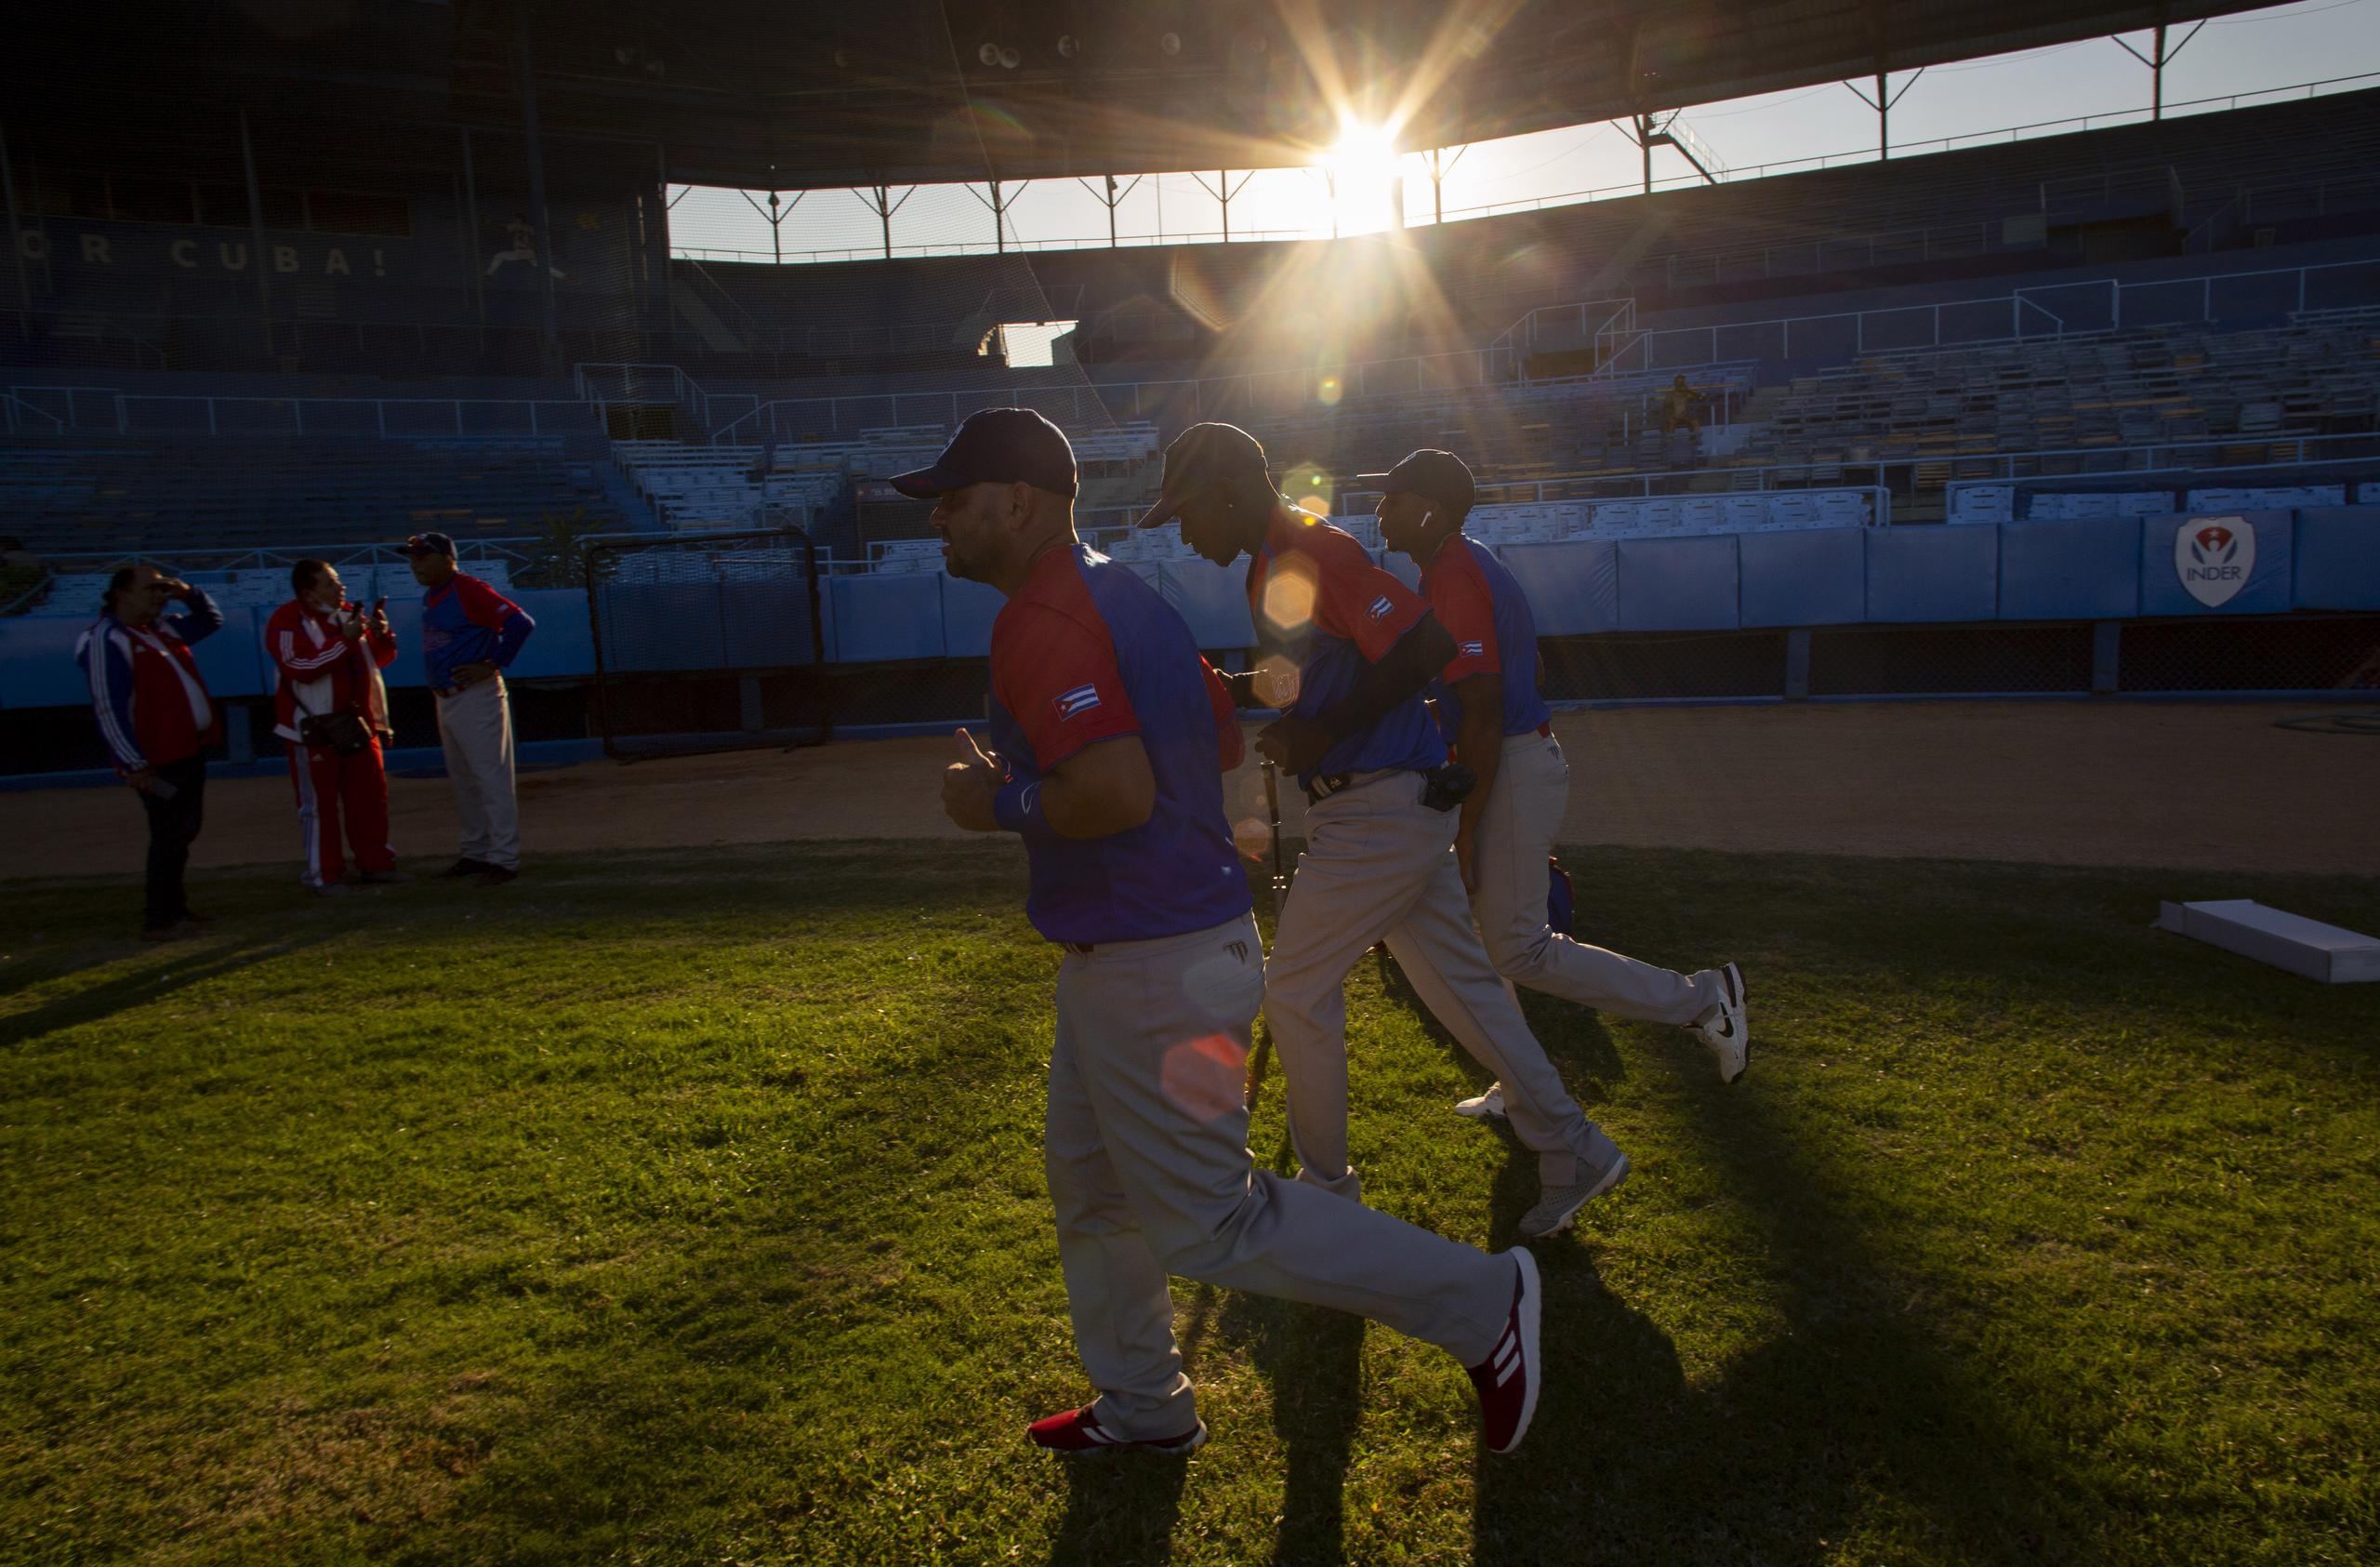 Peloteros de la selección de Cuba inician entrenamientos en el estadio Latinoamericano rumbo al Clásico Mundial de Béisbol, el lunes 16 de enero de 2023. (AP Foto/Ismael Francisco)